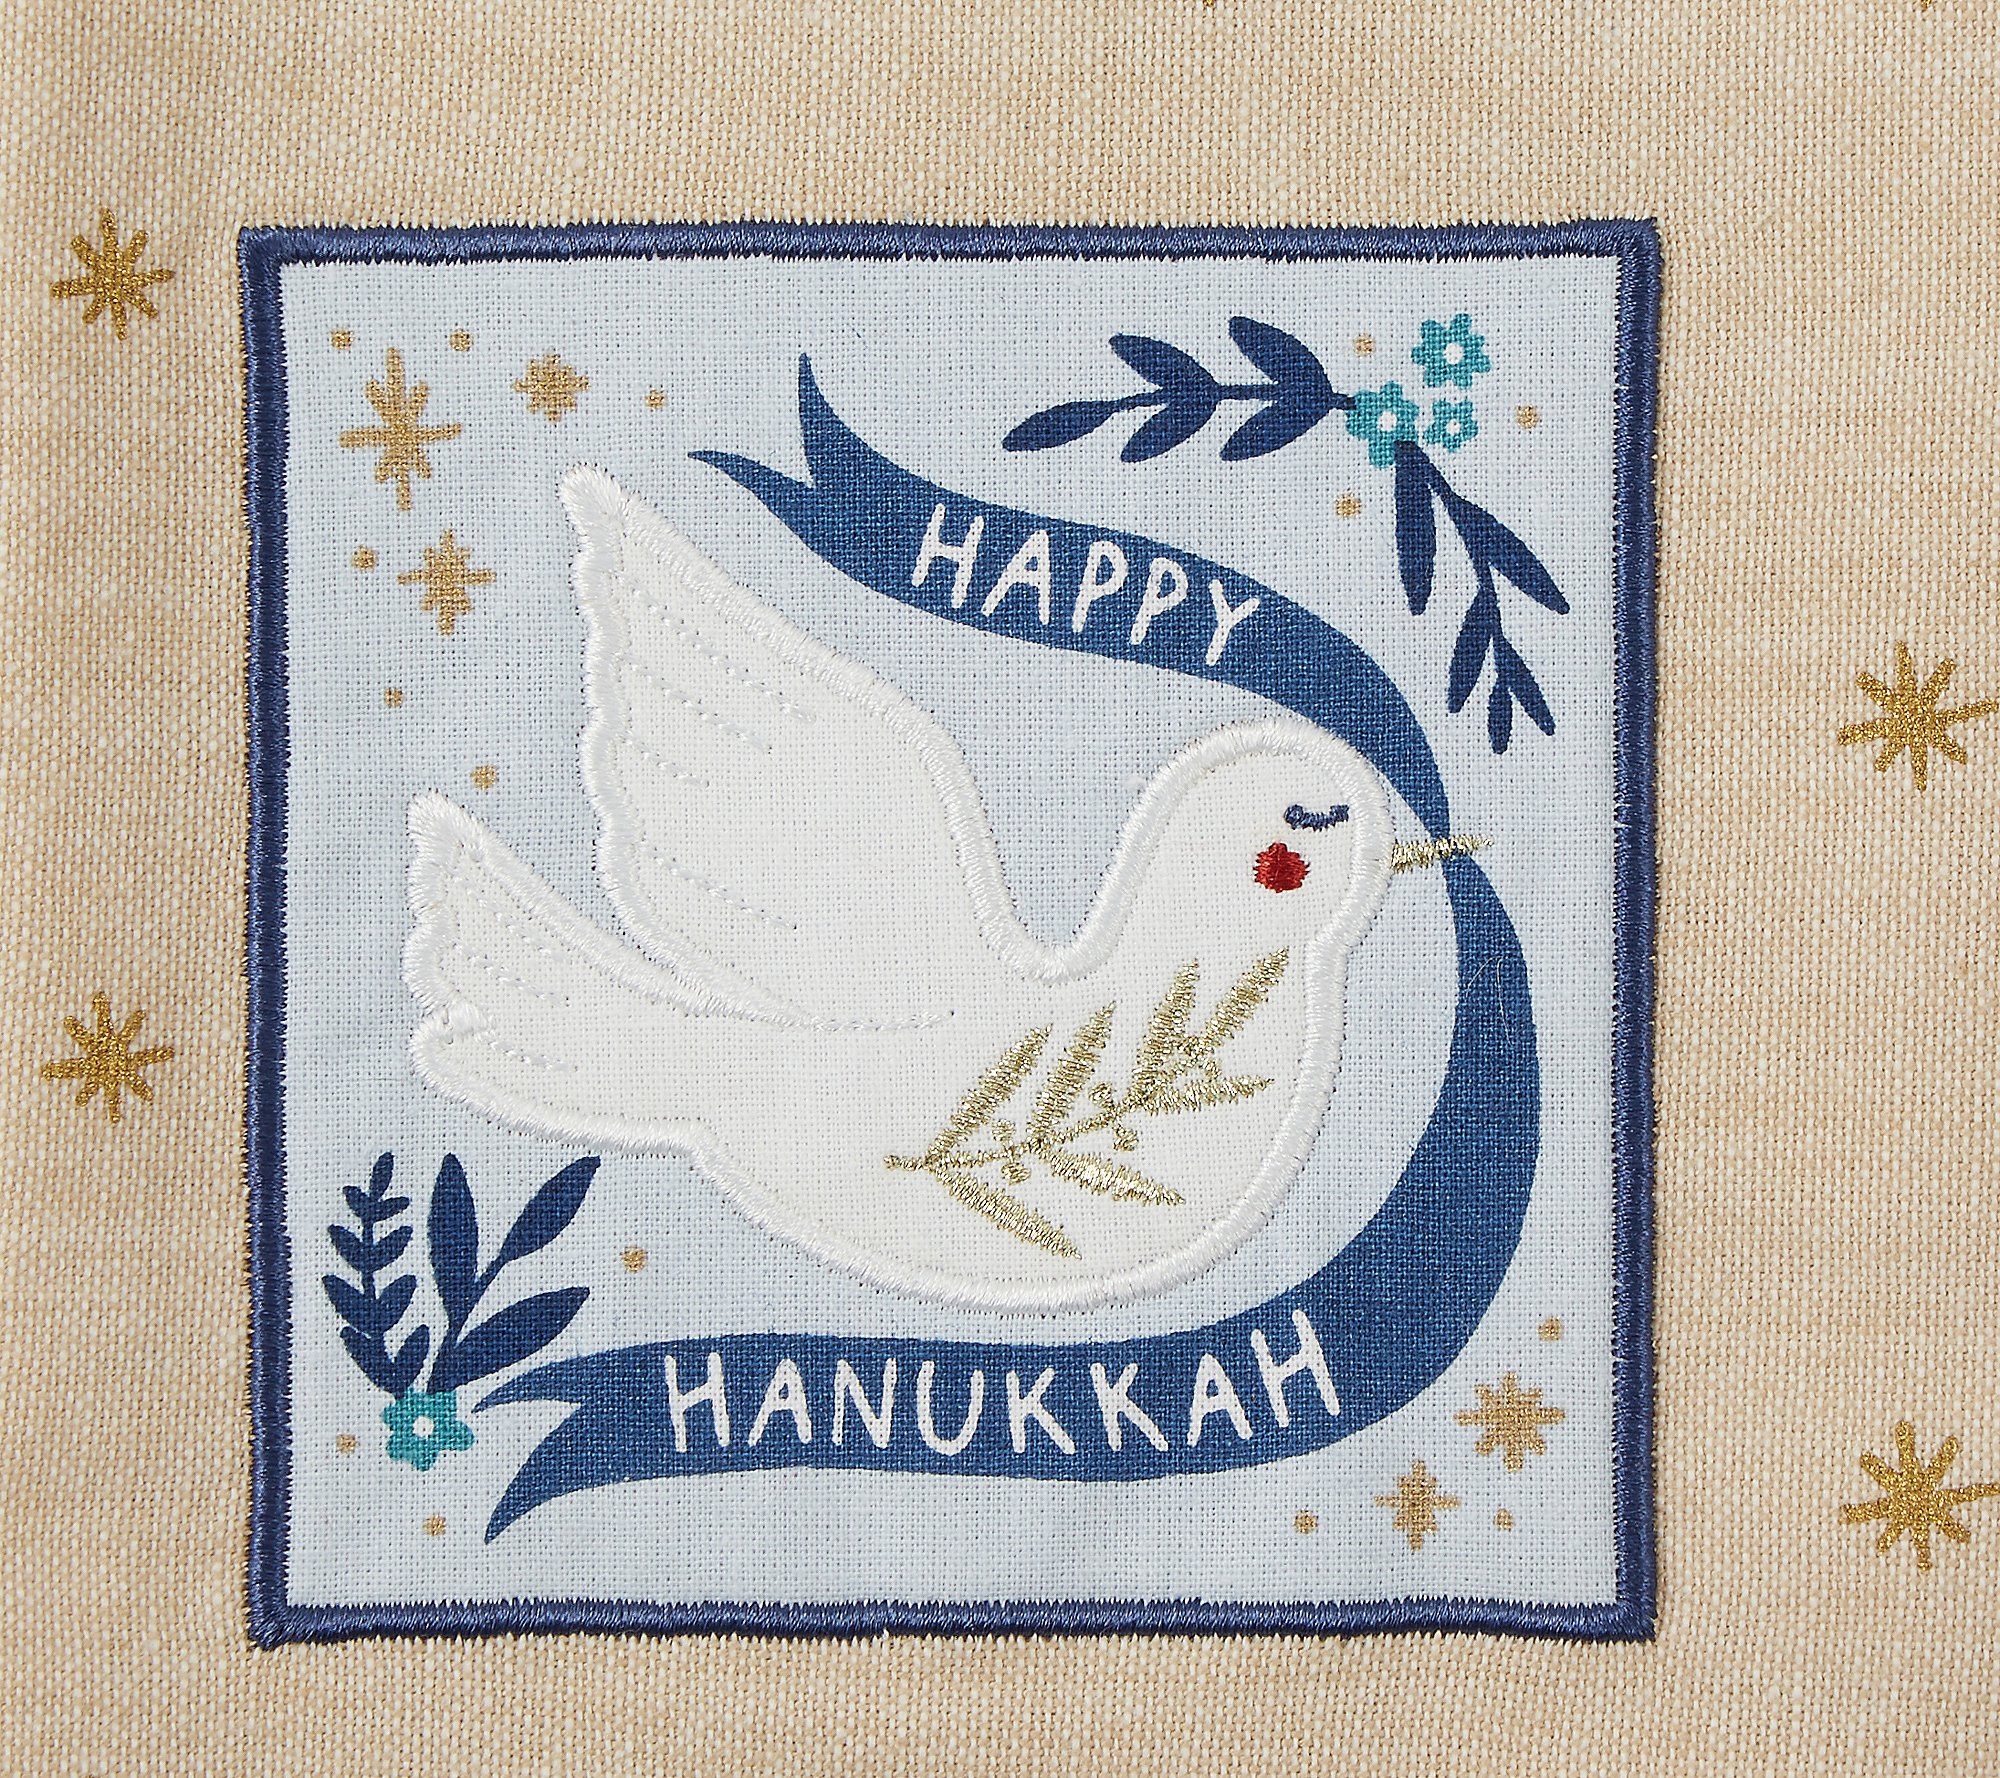 Design Imports Set of 3 Hanukkah Embellished Ki tchen Towels